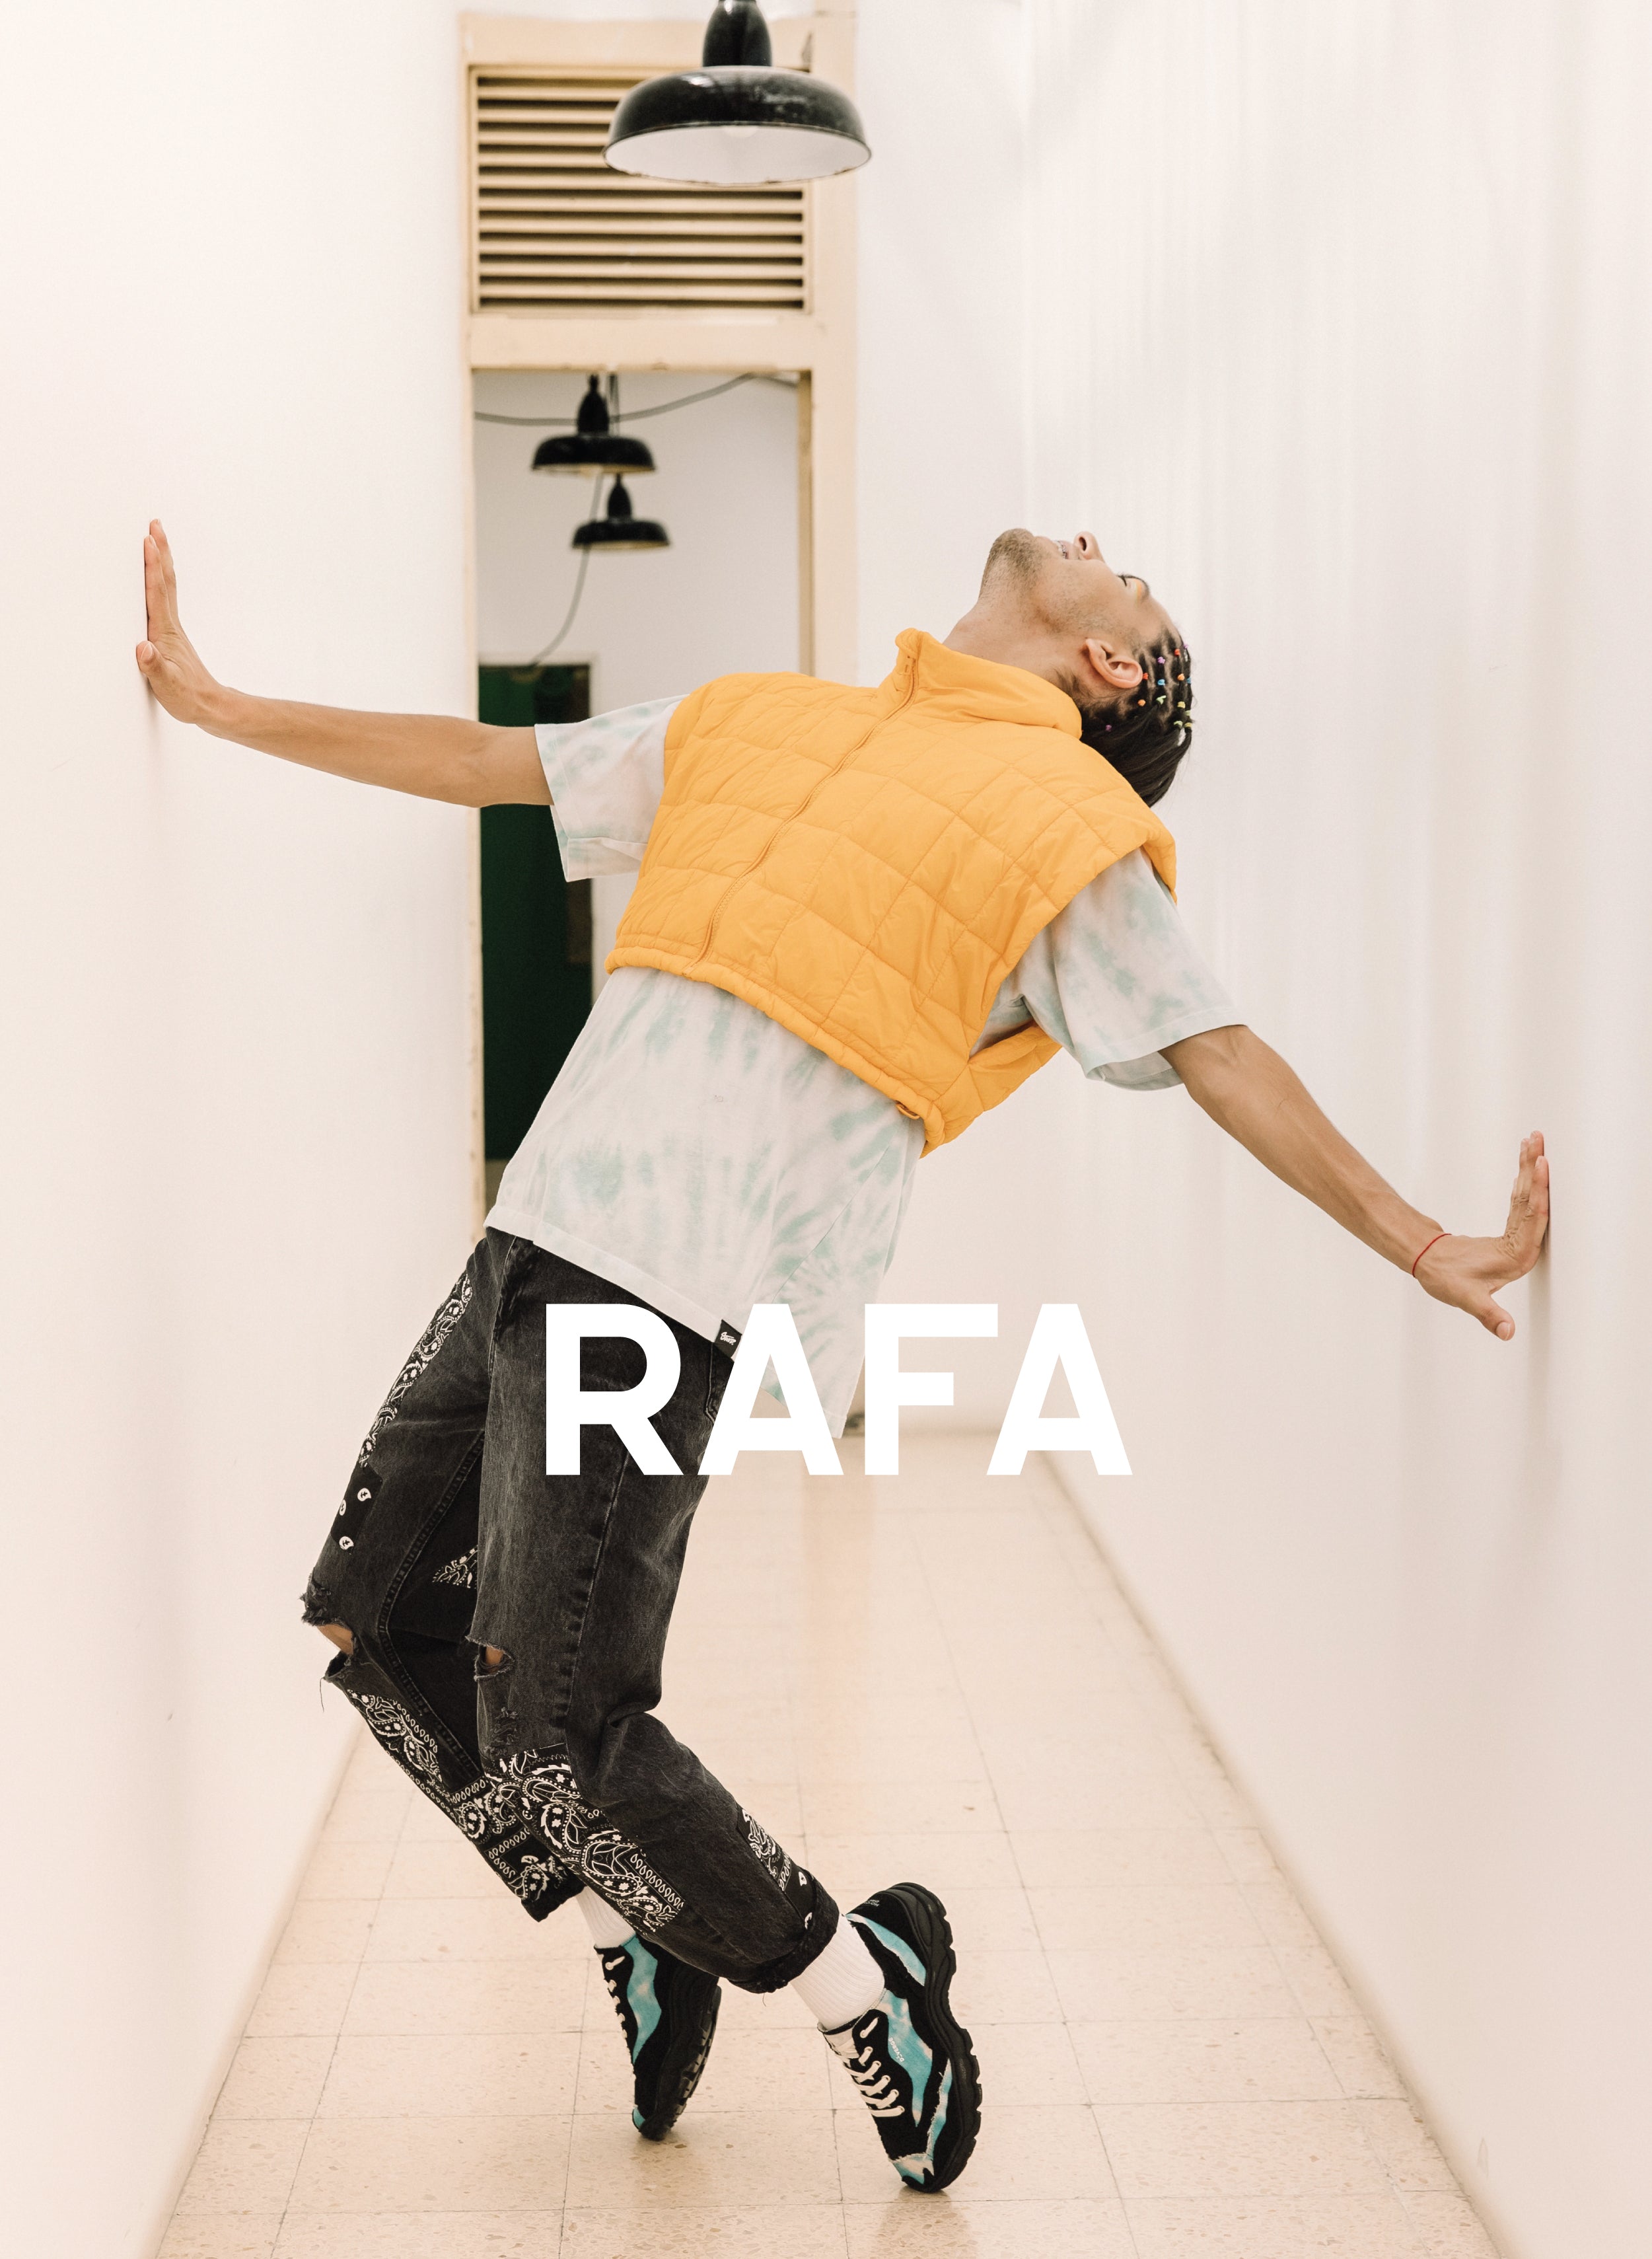 Rafa pendeva sopra i suoi piedi, indossando Diverge sneakers, promuovendo l'impatto sociale e le scarpe personalizzate attraverso il progetto Imagine.